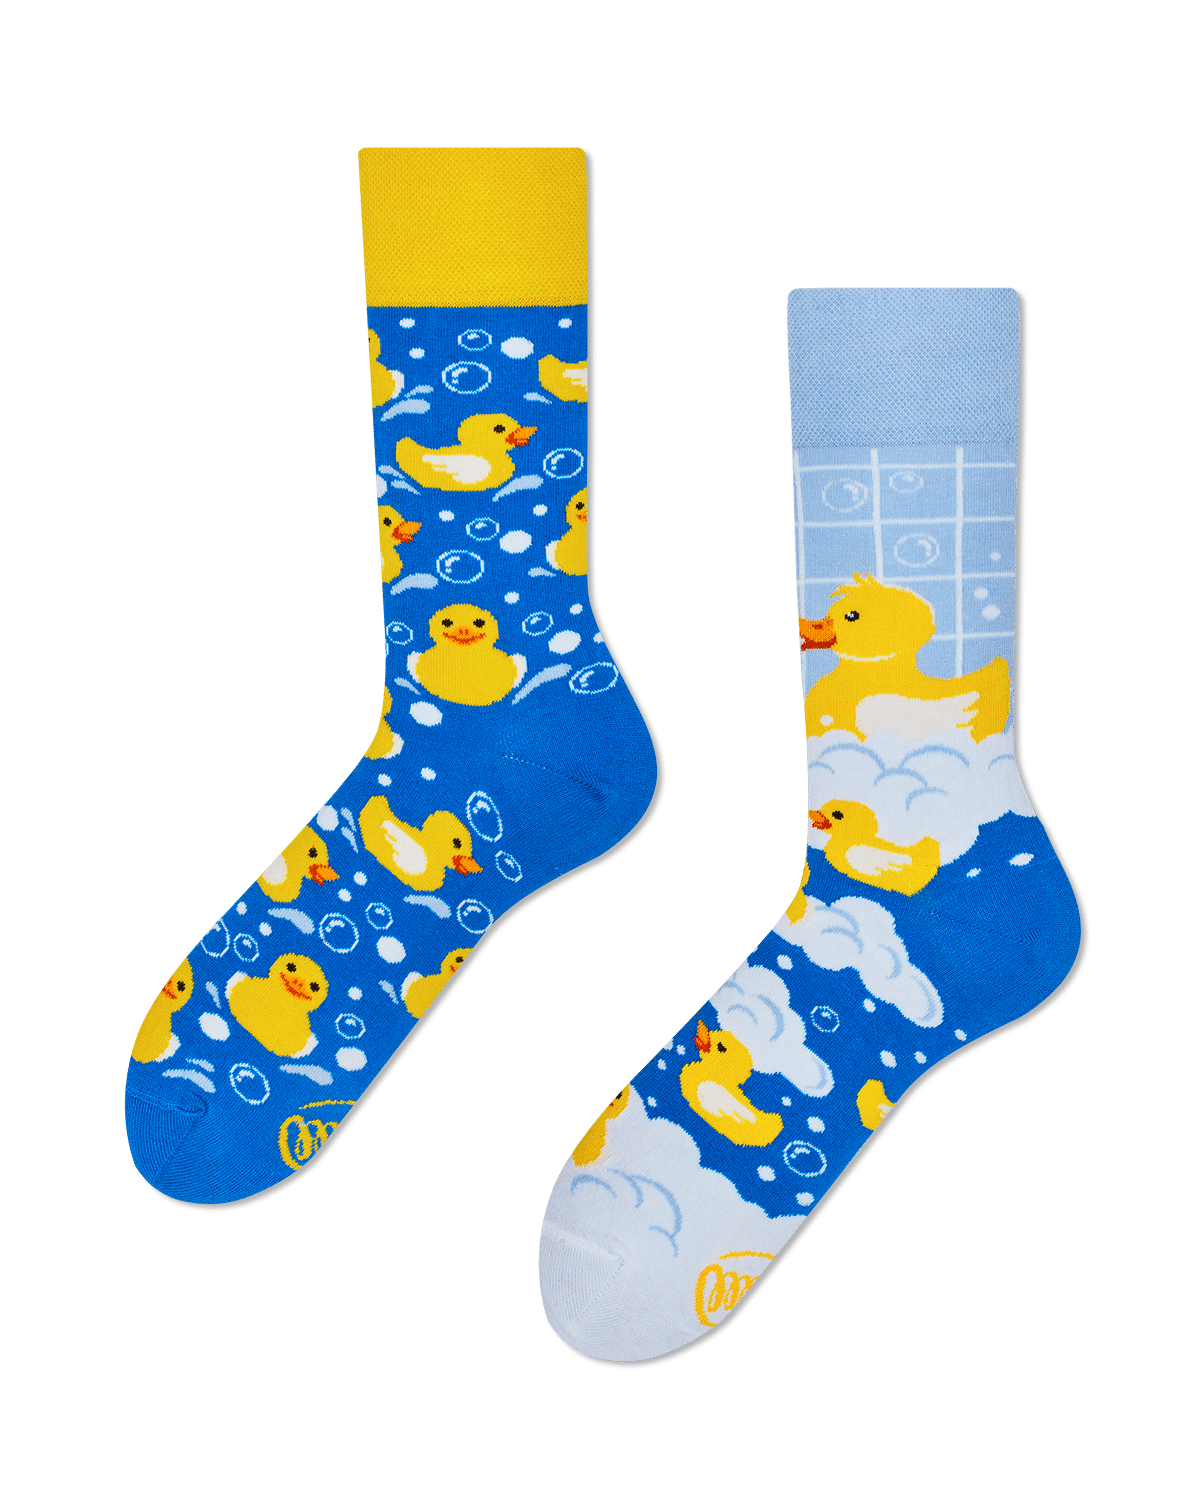 Herhaald mate gips Badeend sokken - Leuke sokken met badeendjes | Soque